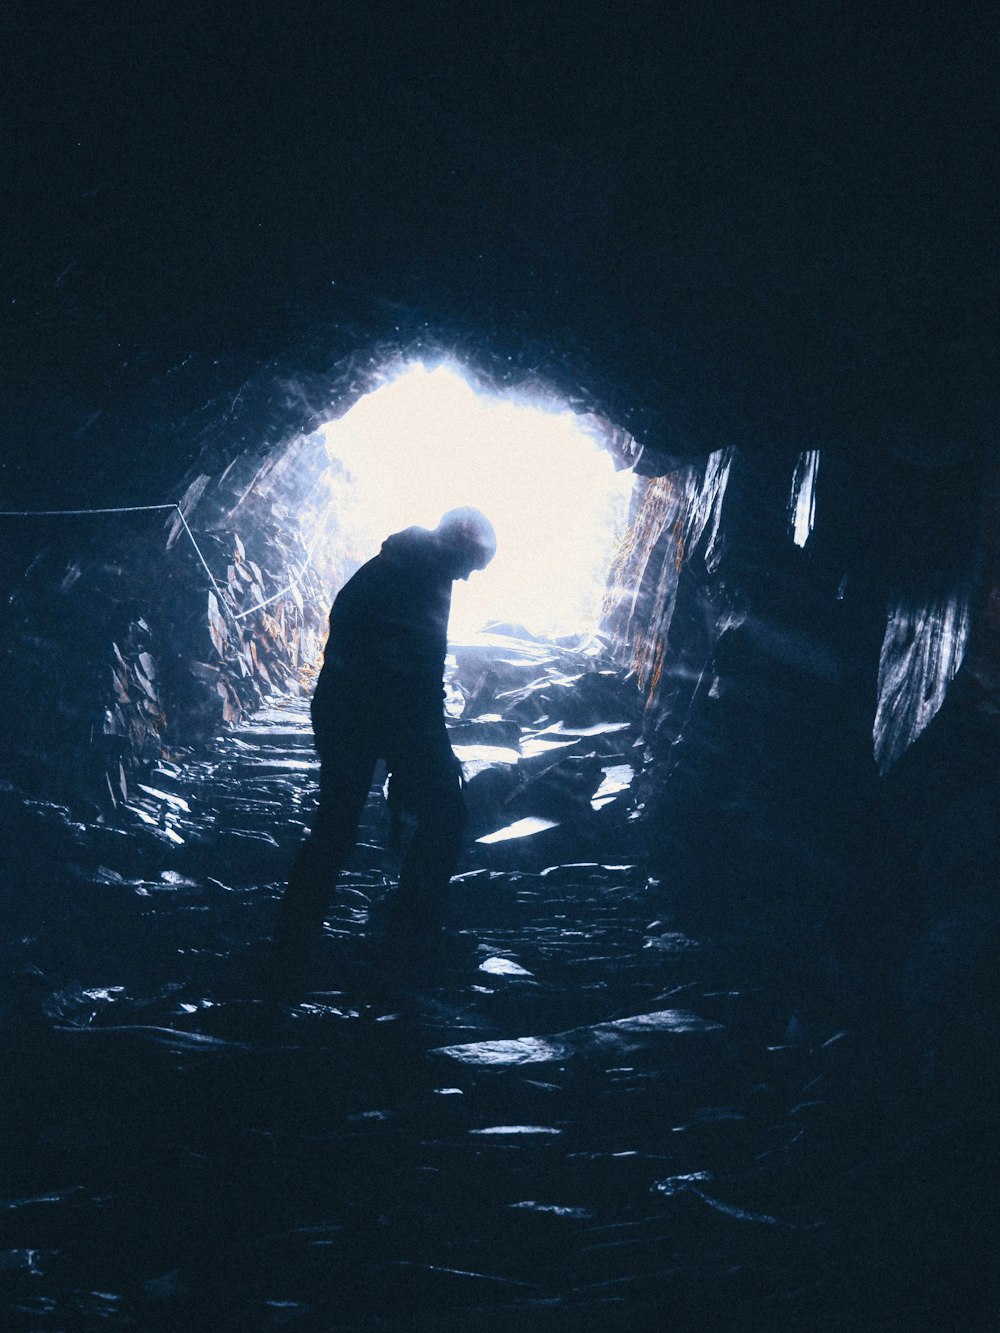 pessoa em pé na caverna